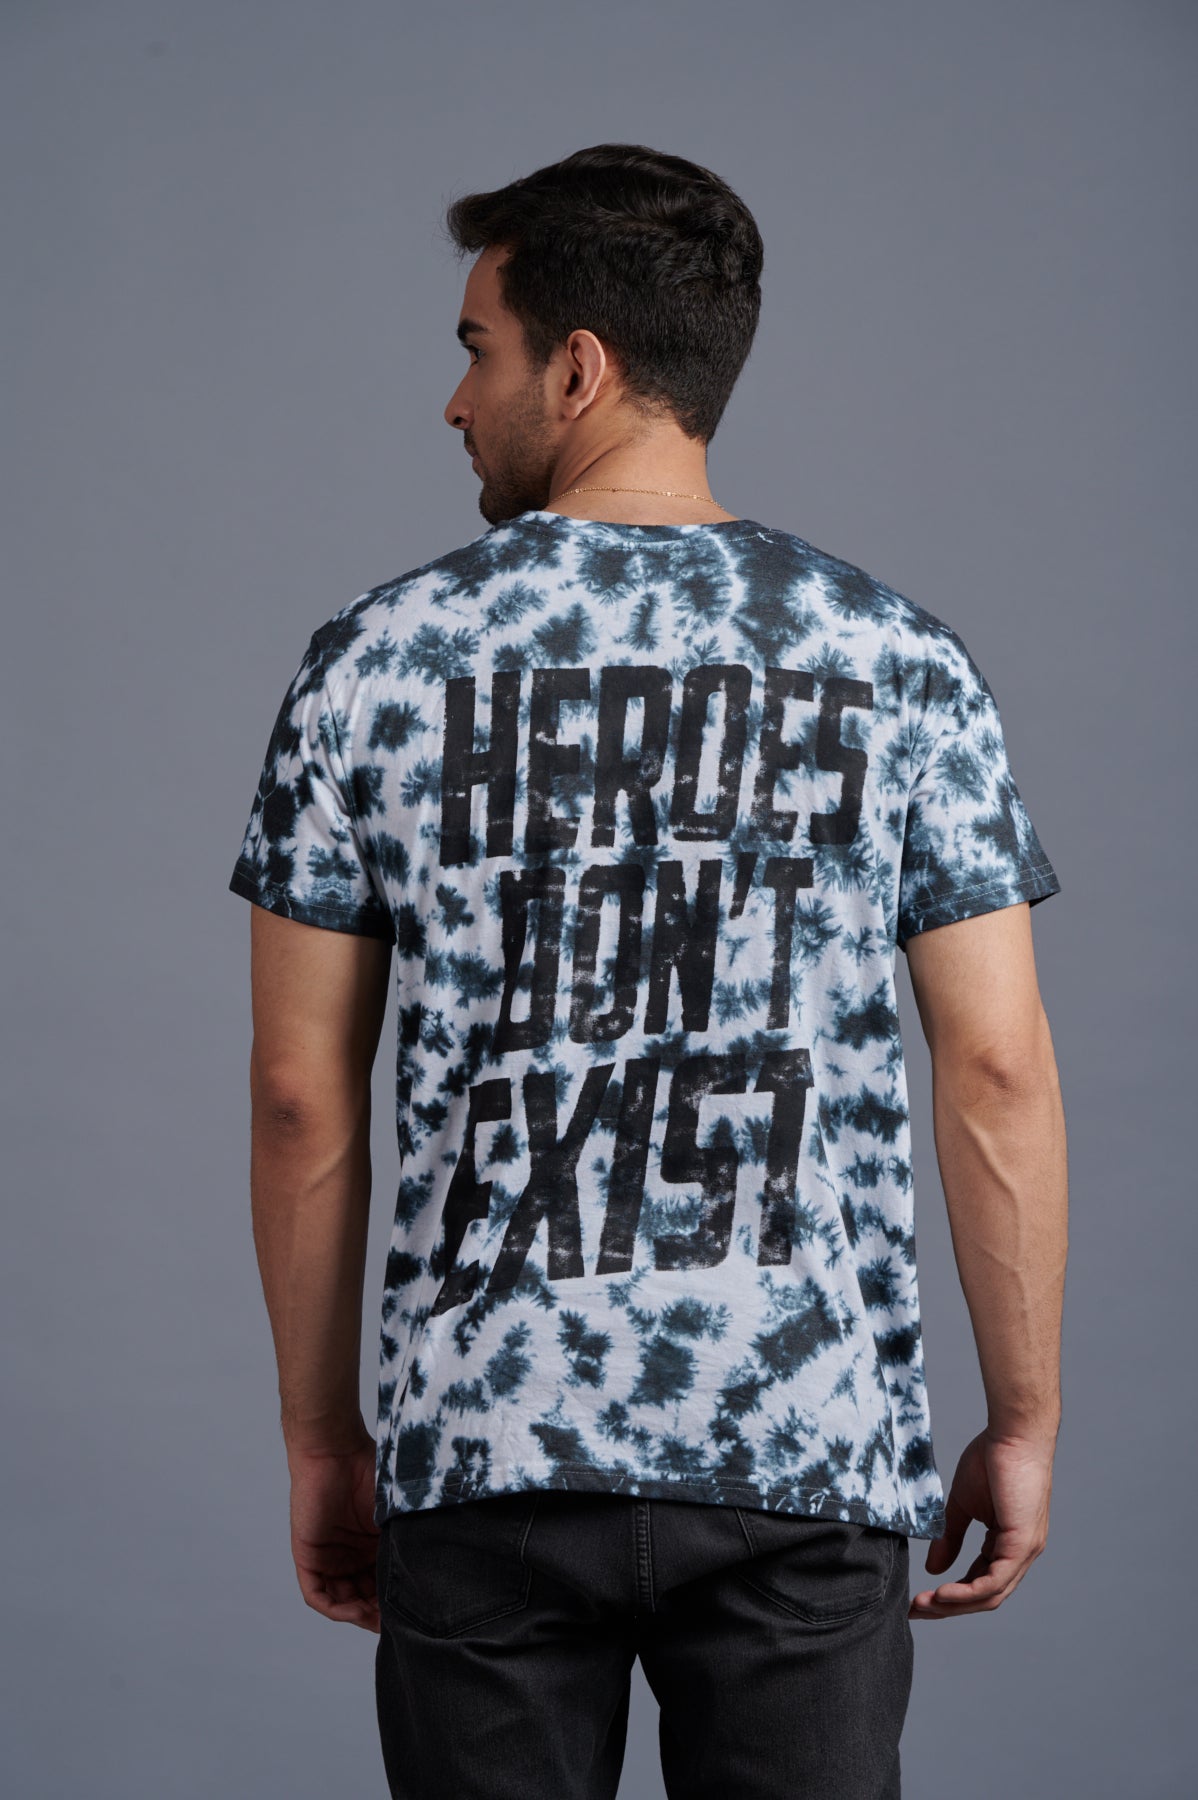 Heroes Don’t Exist Tye Dye Black & White Oversizes T-Shirt for Men - Go Devil